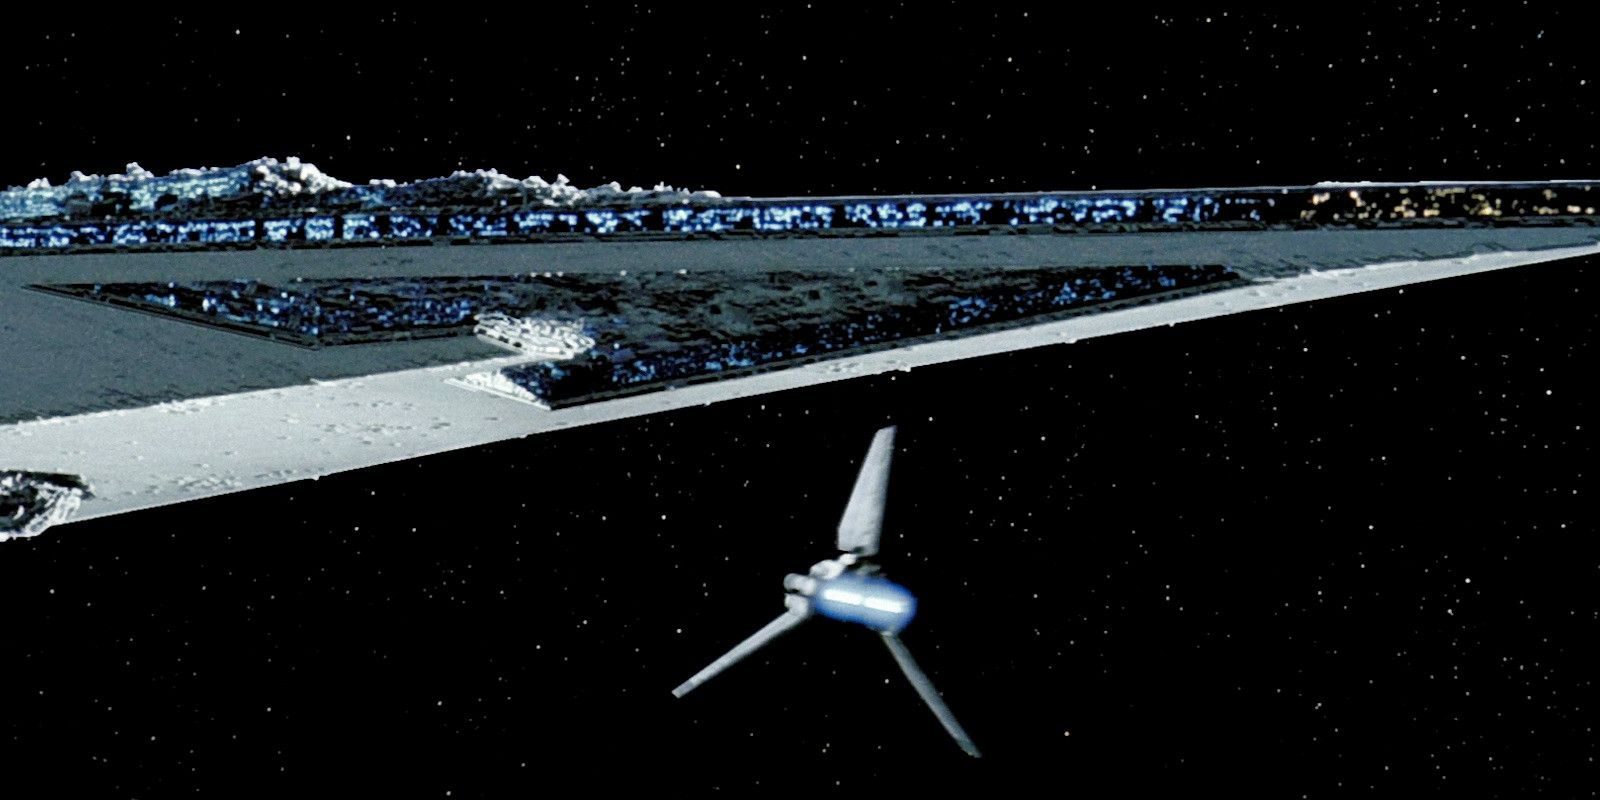 Darth Vador's Executor flies through the galaxy in Star Wars